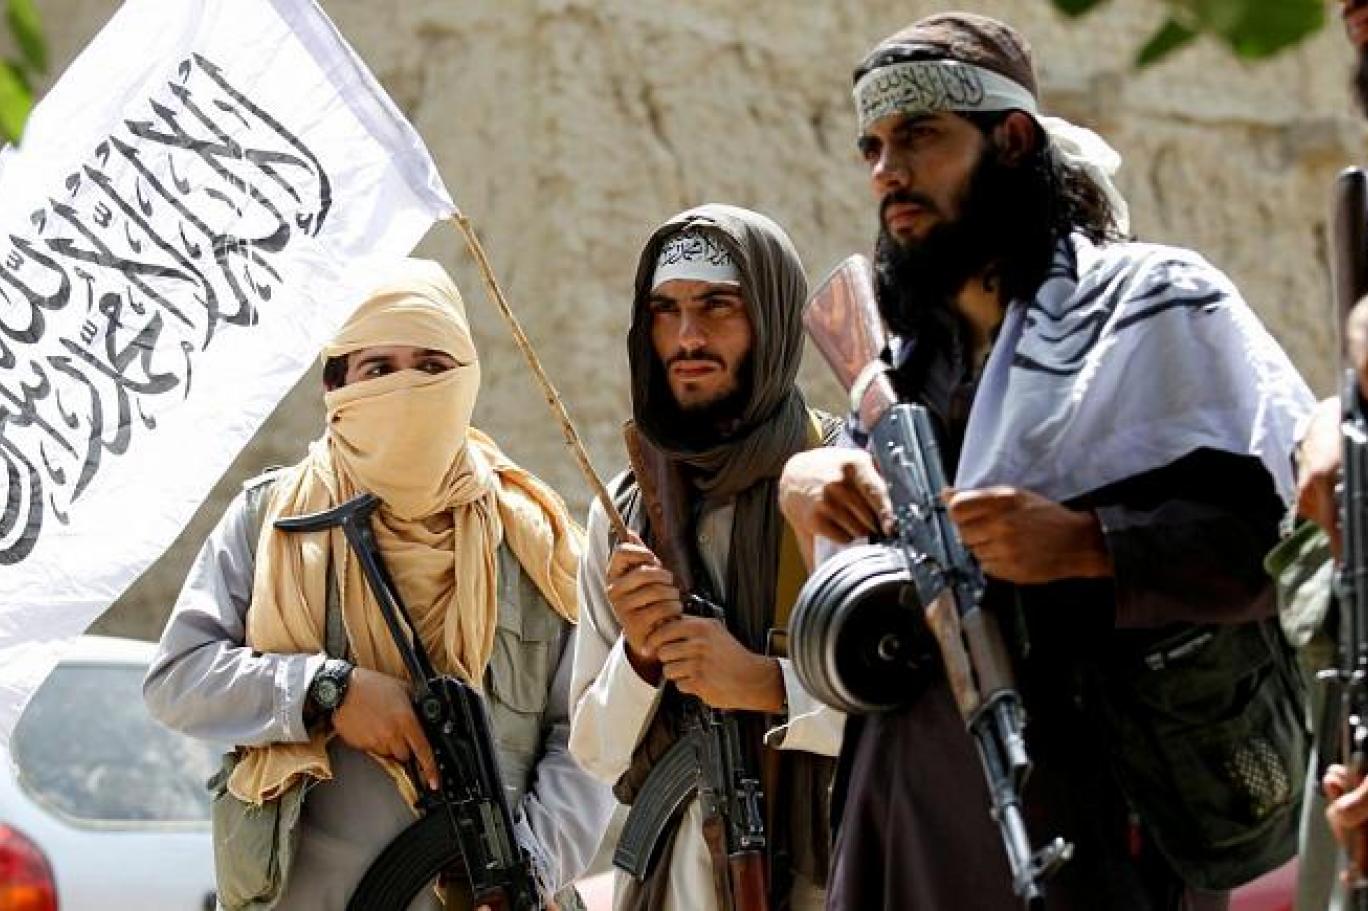 “Taliban – Afgan barış görüşmeleri Türkiye'de yapılmalı”